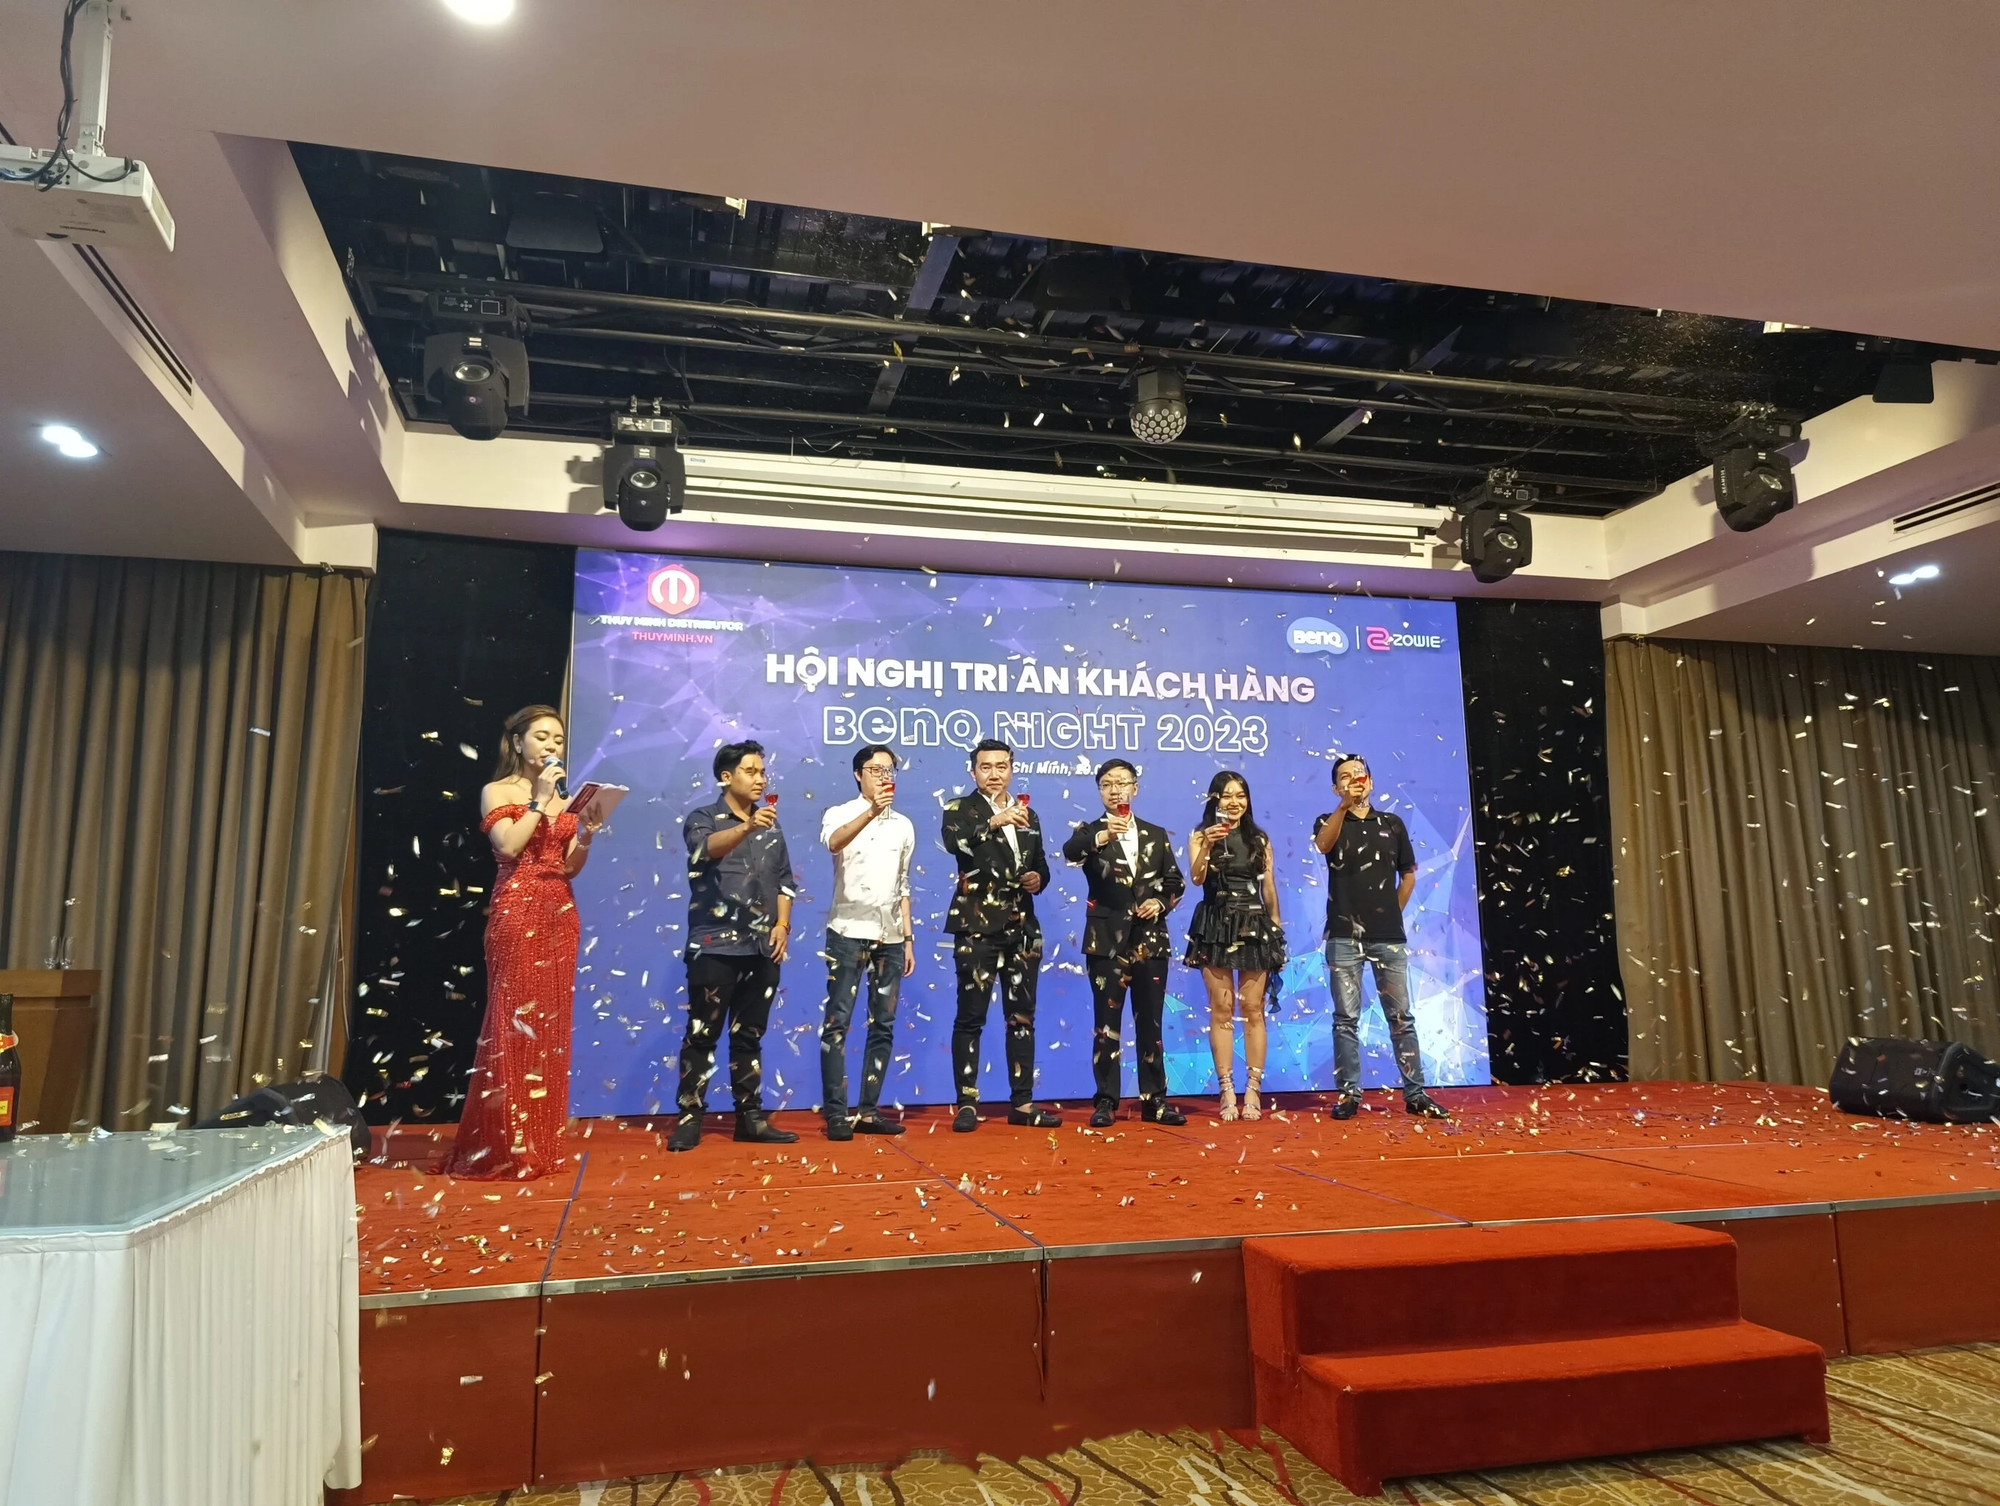 Hội nghị tri ân khách hàng BenQ 2023: Thùy Minh cùng BenQ cam kết đẩy mạnh tăng trưởng thị phần màn hình máy tính tại Việt Nam - Ảnh 6.